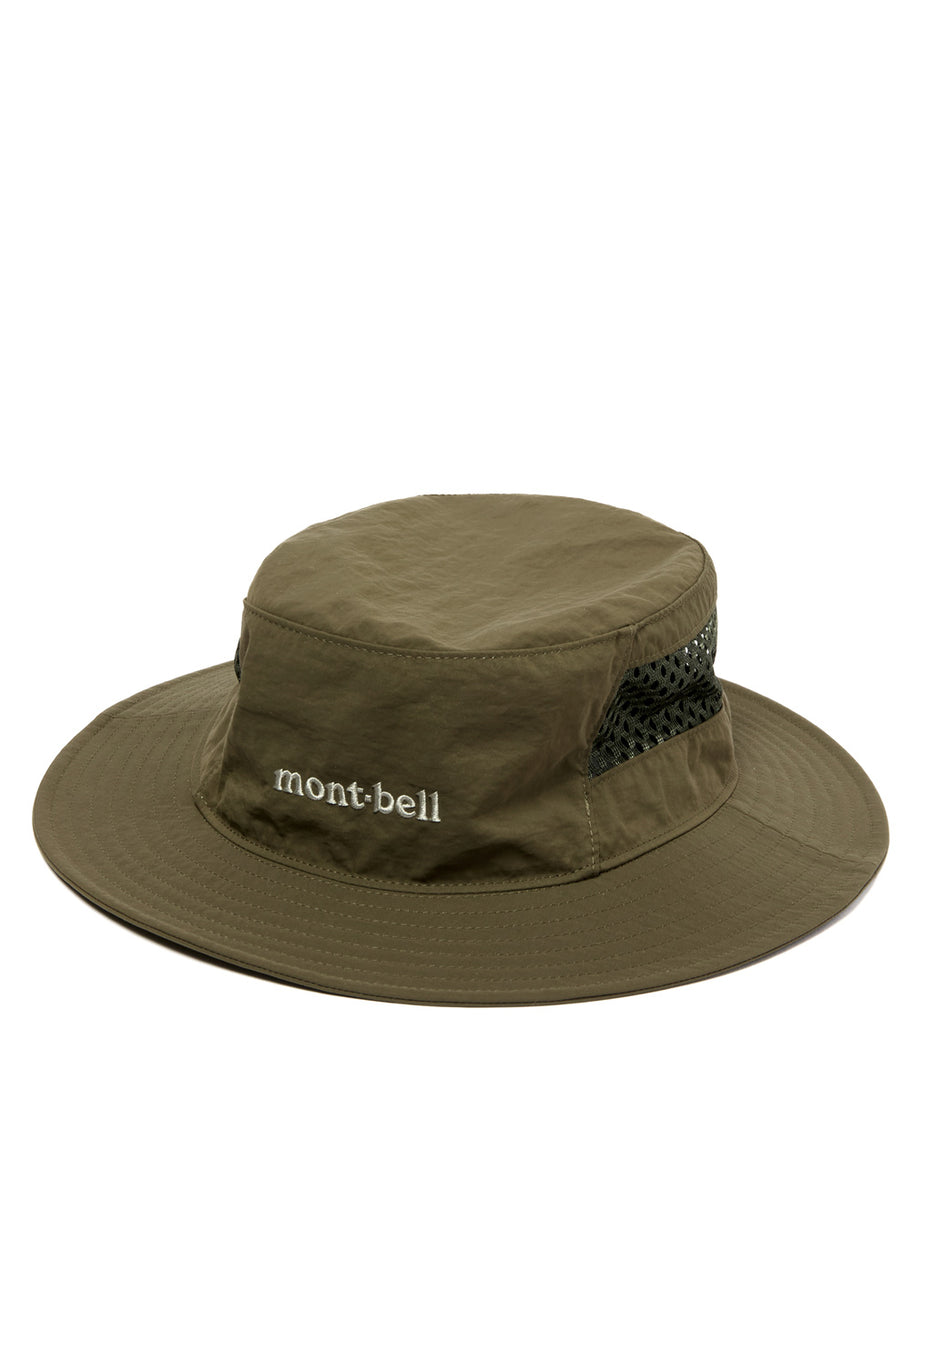 Montbell O.D. Mesh Hat - Khaki